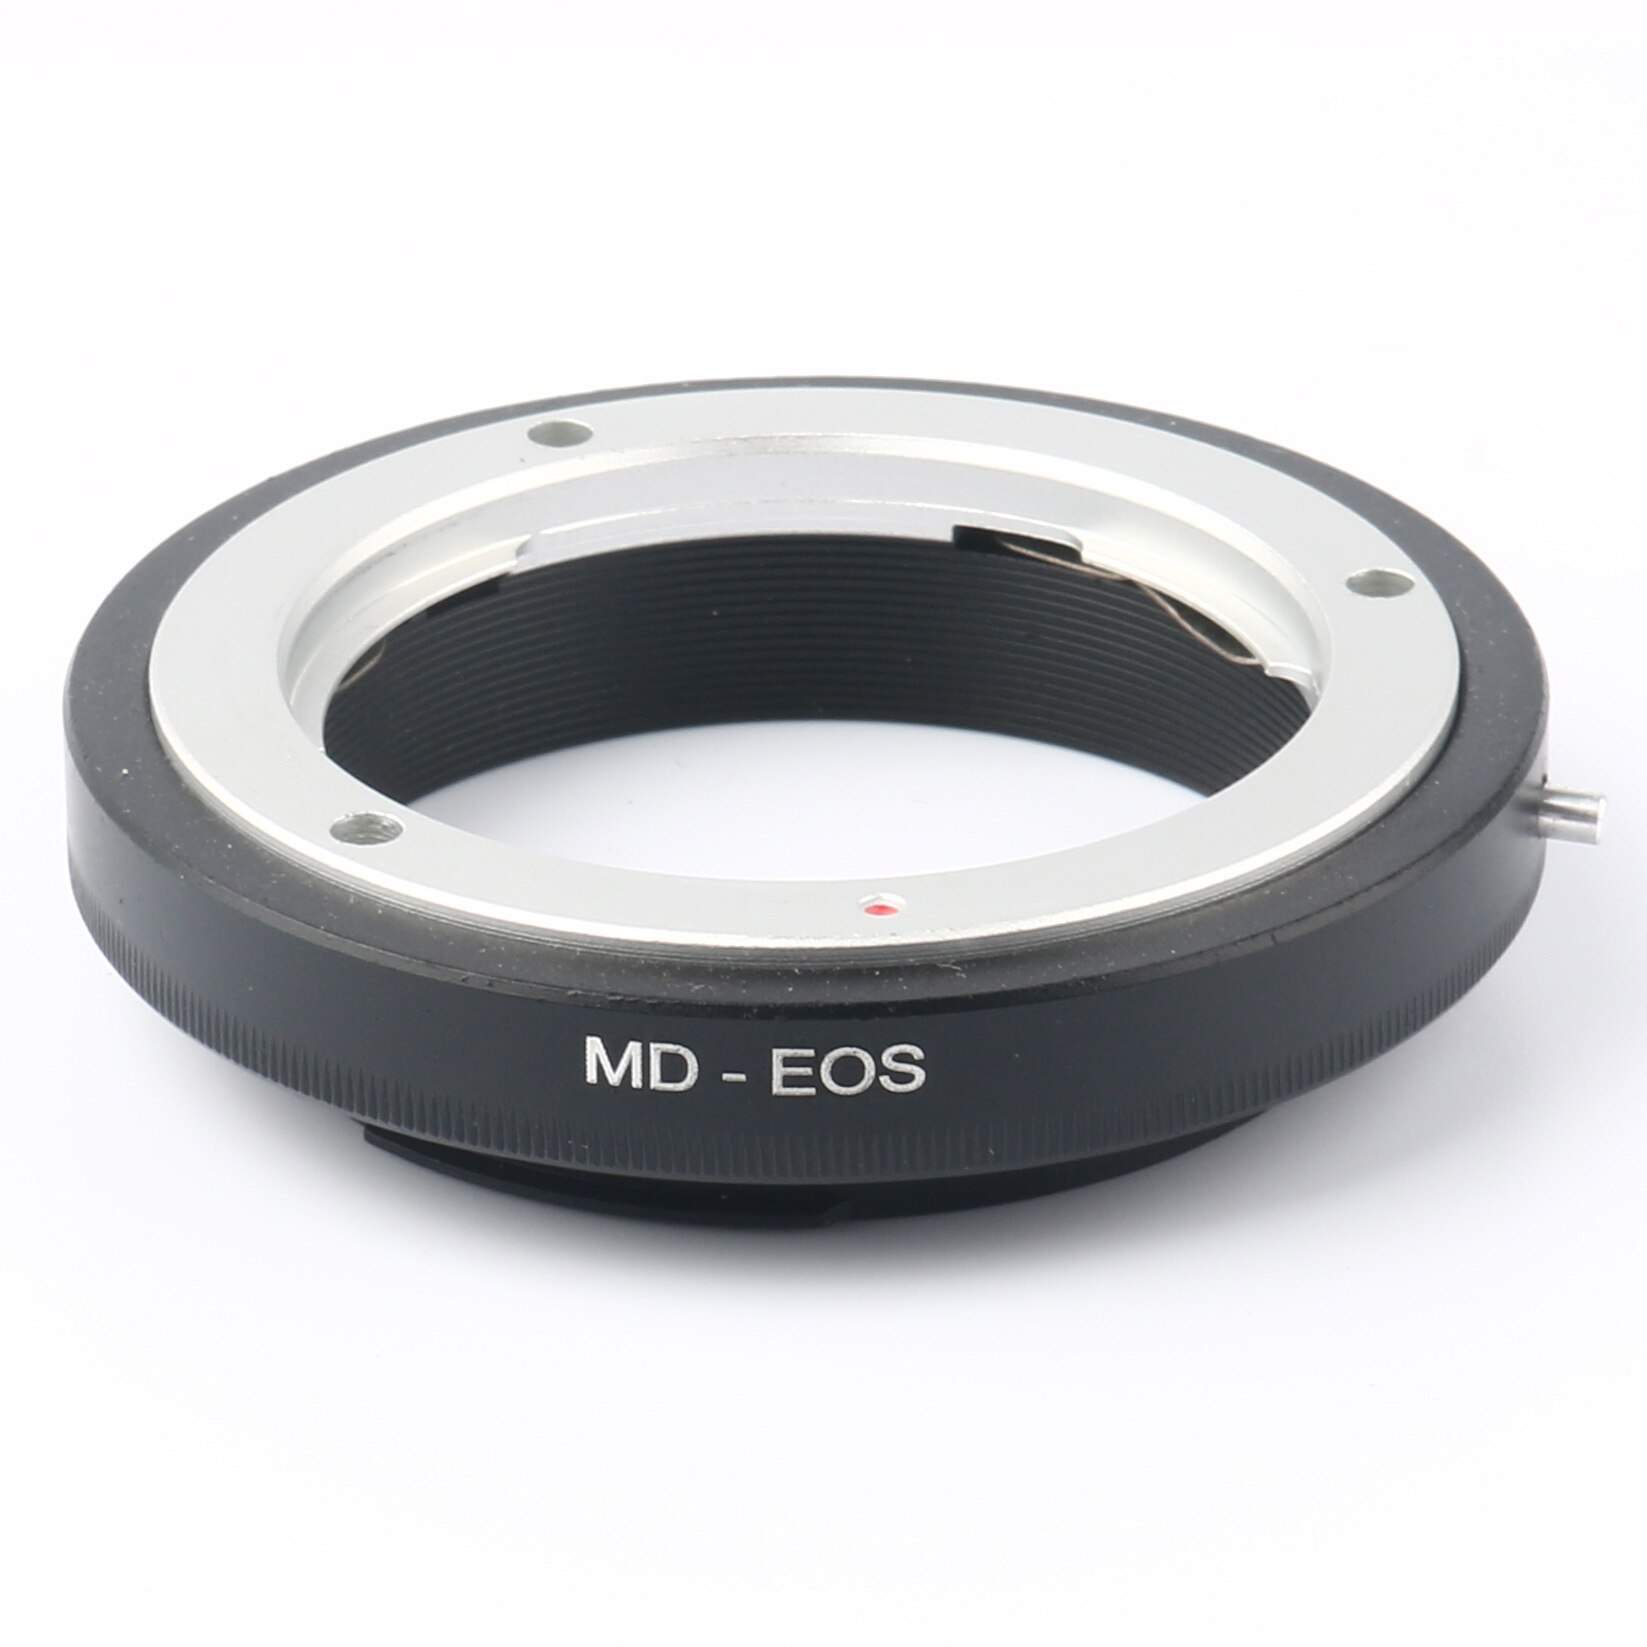 MD-EOS Macro Adapter Ring Voor Sony Minolta Md Mc Lens Voor Canon Eos 600D 700D 750D 800D 100D 1300D 5D 5DII 5Diii 5DIV 6D 77D 1DX